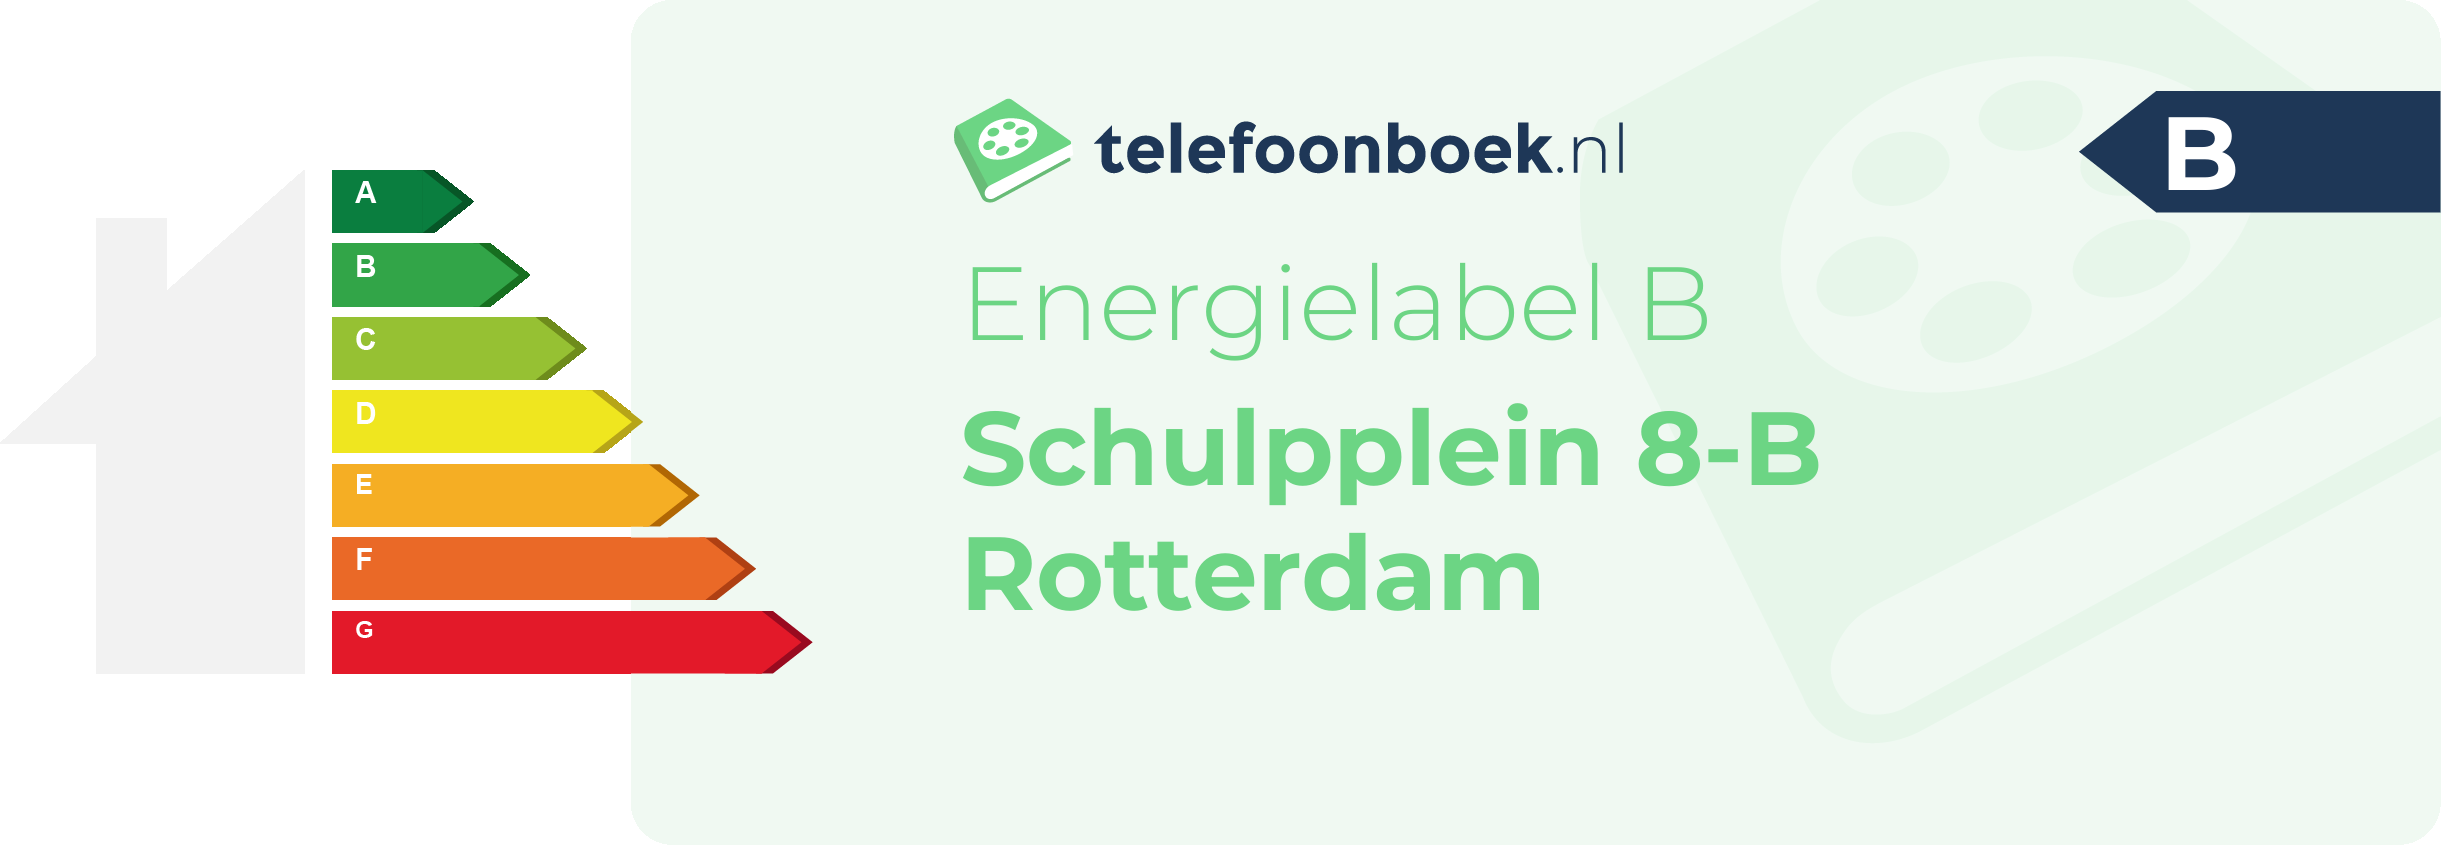 Energielabel Schulpplein 8-B Rotterdam